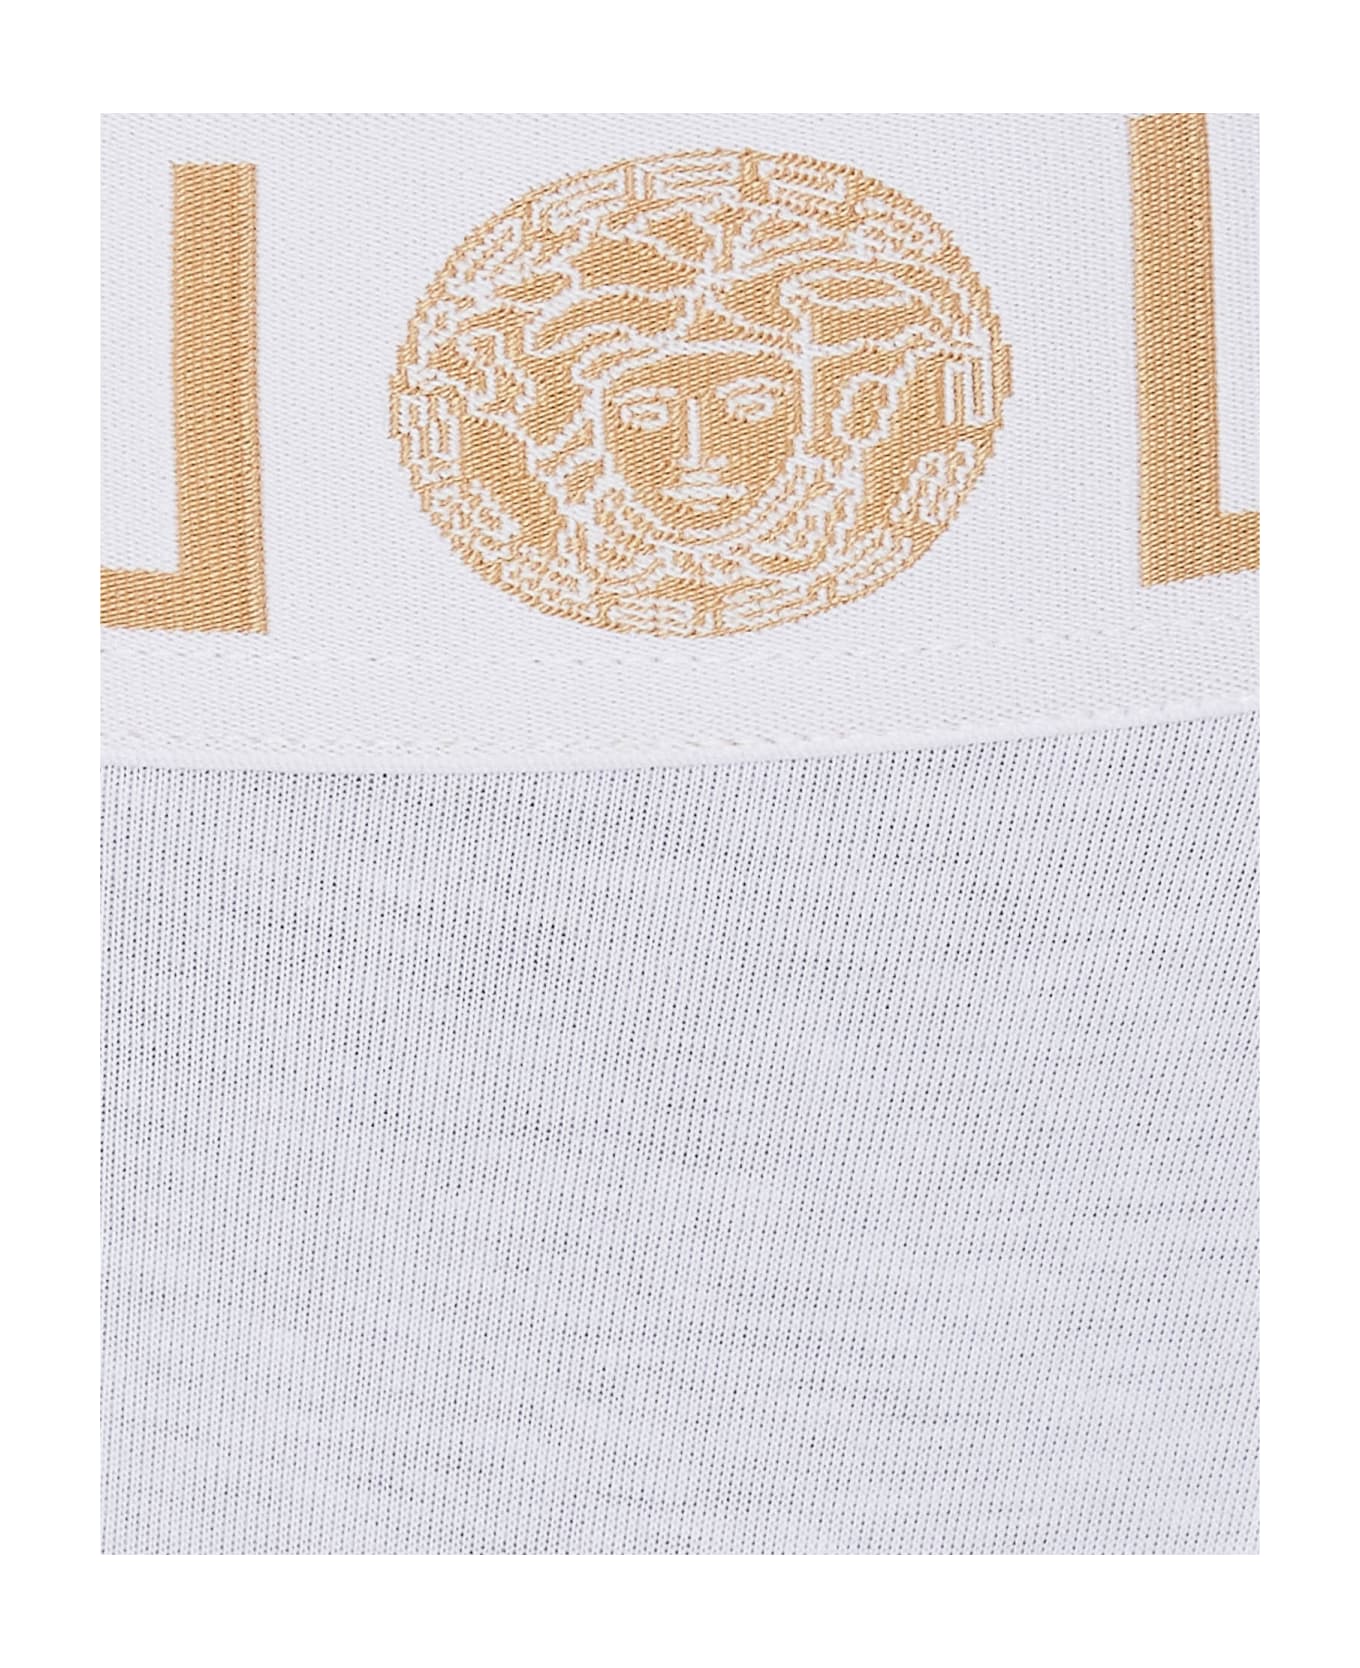 Versace Greca Logo Briefs - WHITE